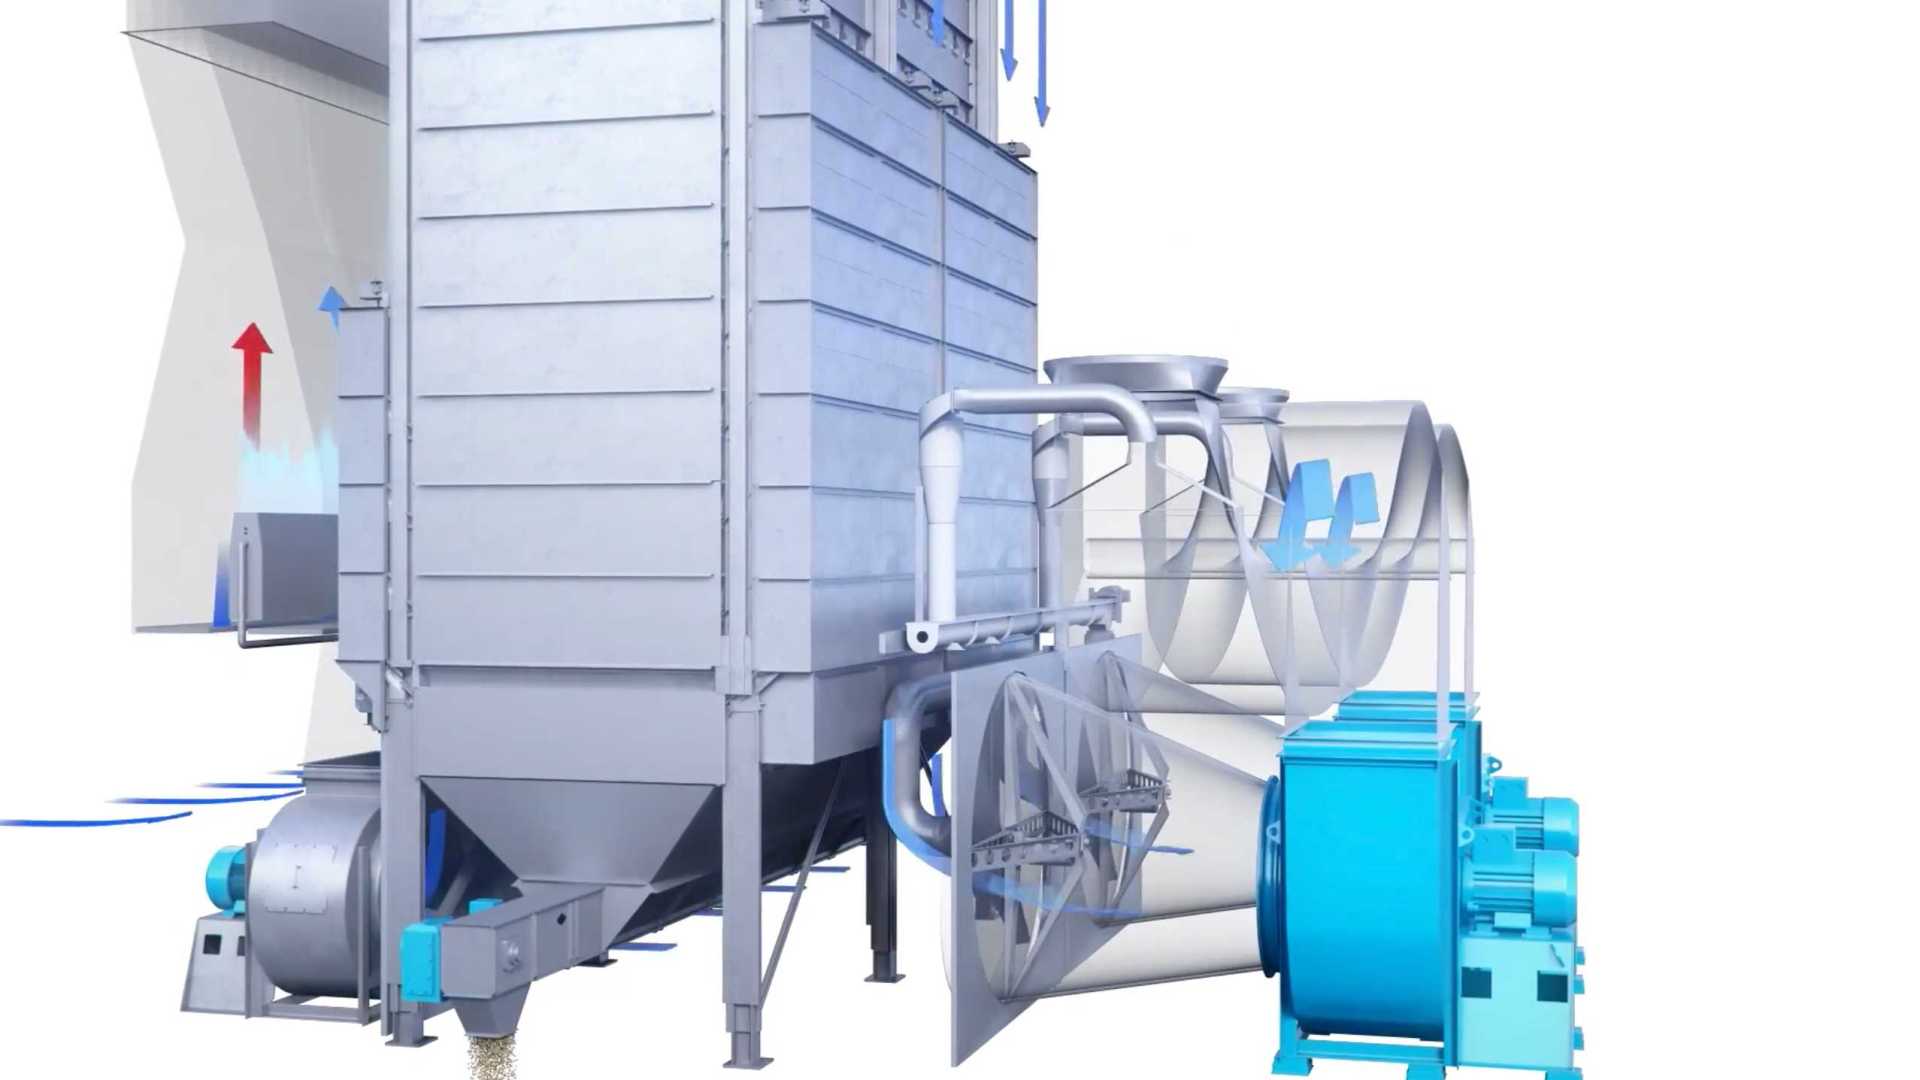 工业农业加热干燥烘干仓生产线机械机床设备演示工艺流程模拟3D三维动画制作公司